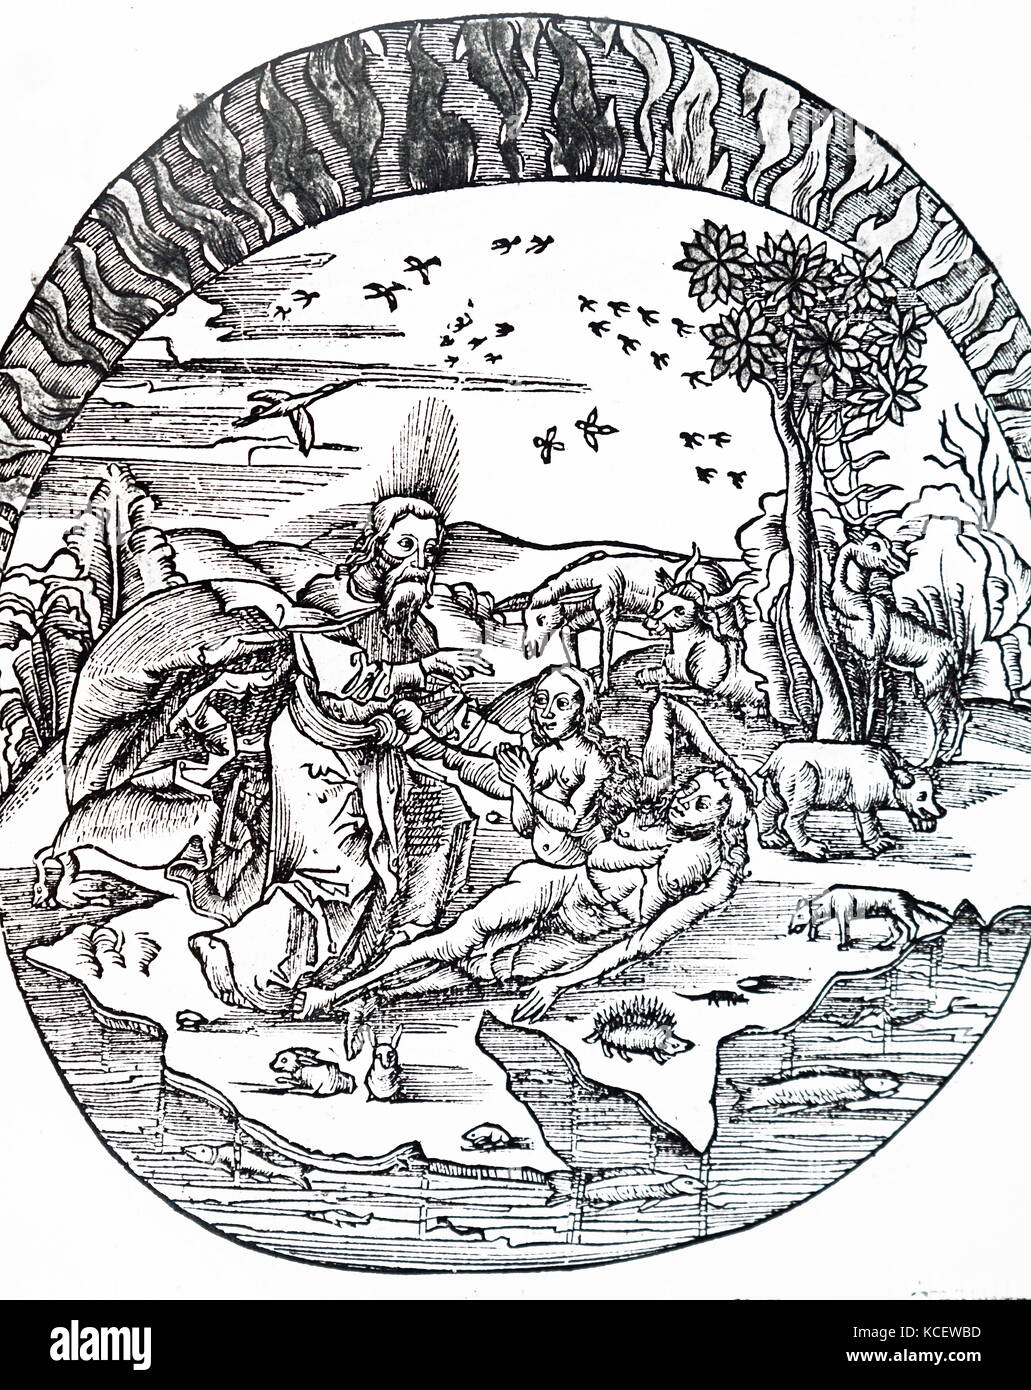 Illustration Thales de Milet' concept d'une terre plate flottant au-dessus de l'eau. Thales de Milet, un Grec Présocratique/ le phénicien, philosophe, mathématicien et astronome. En date du 16e siècle Banque D'Images